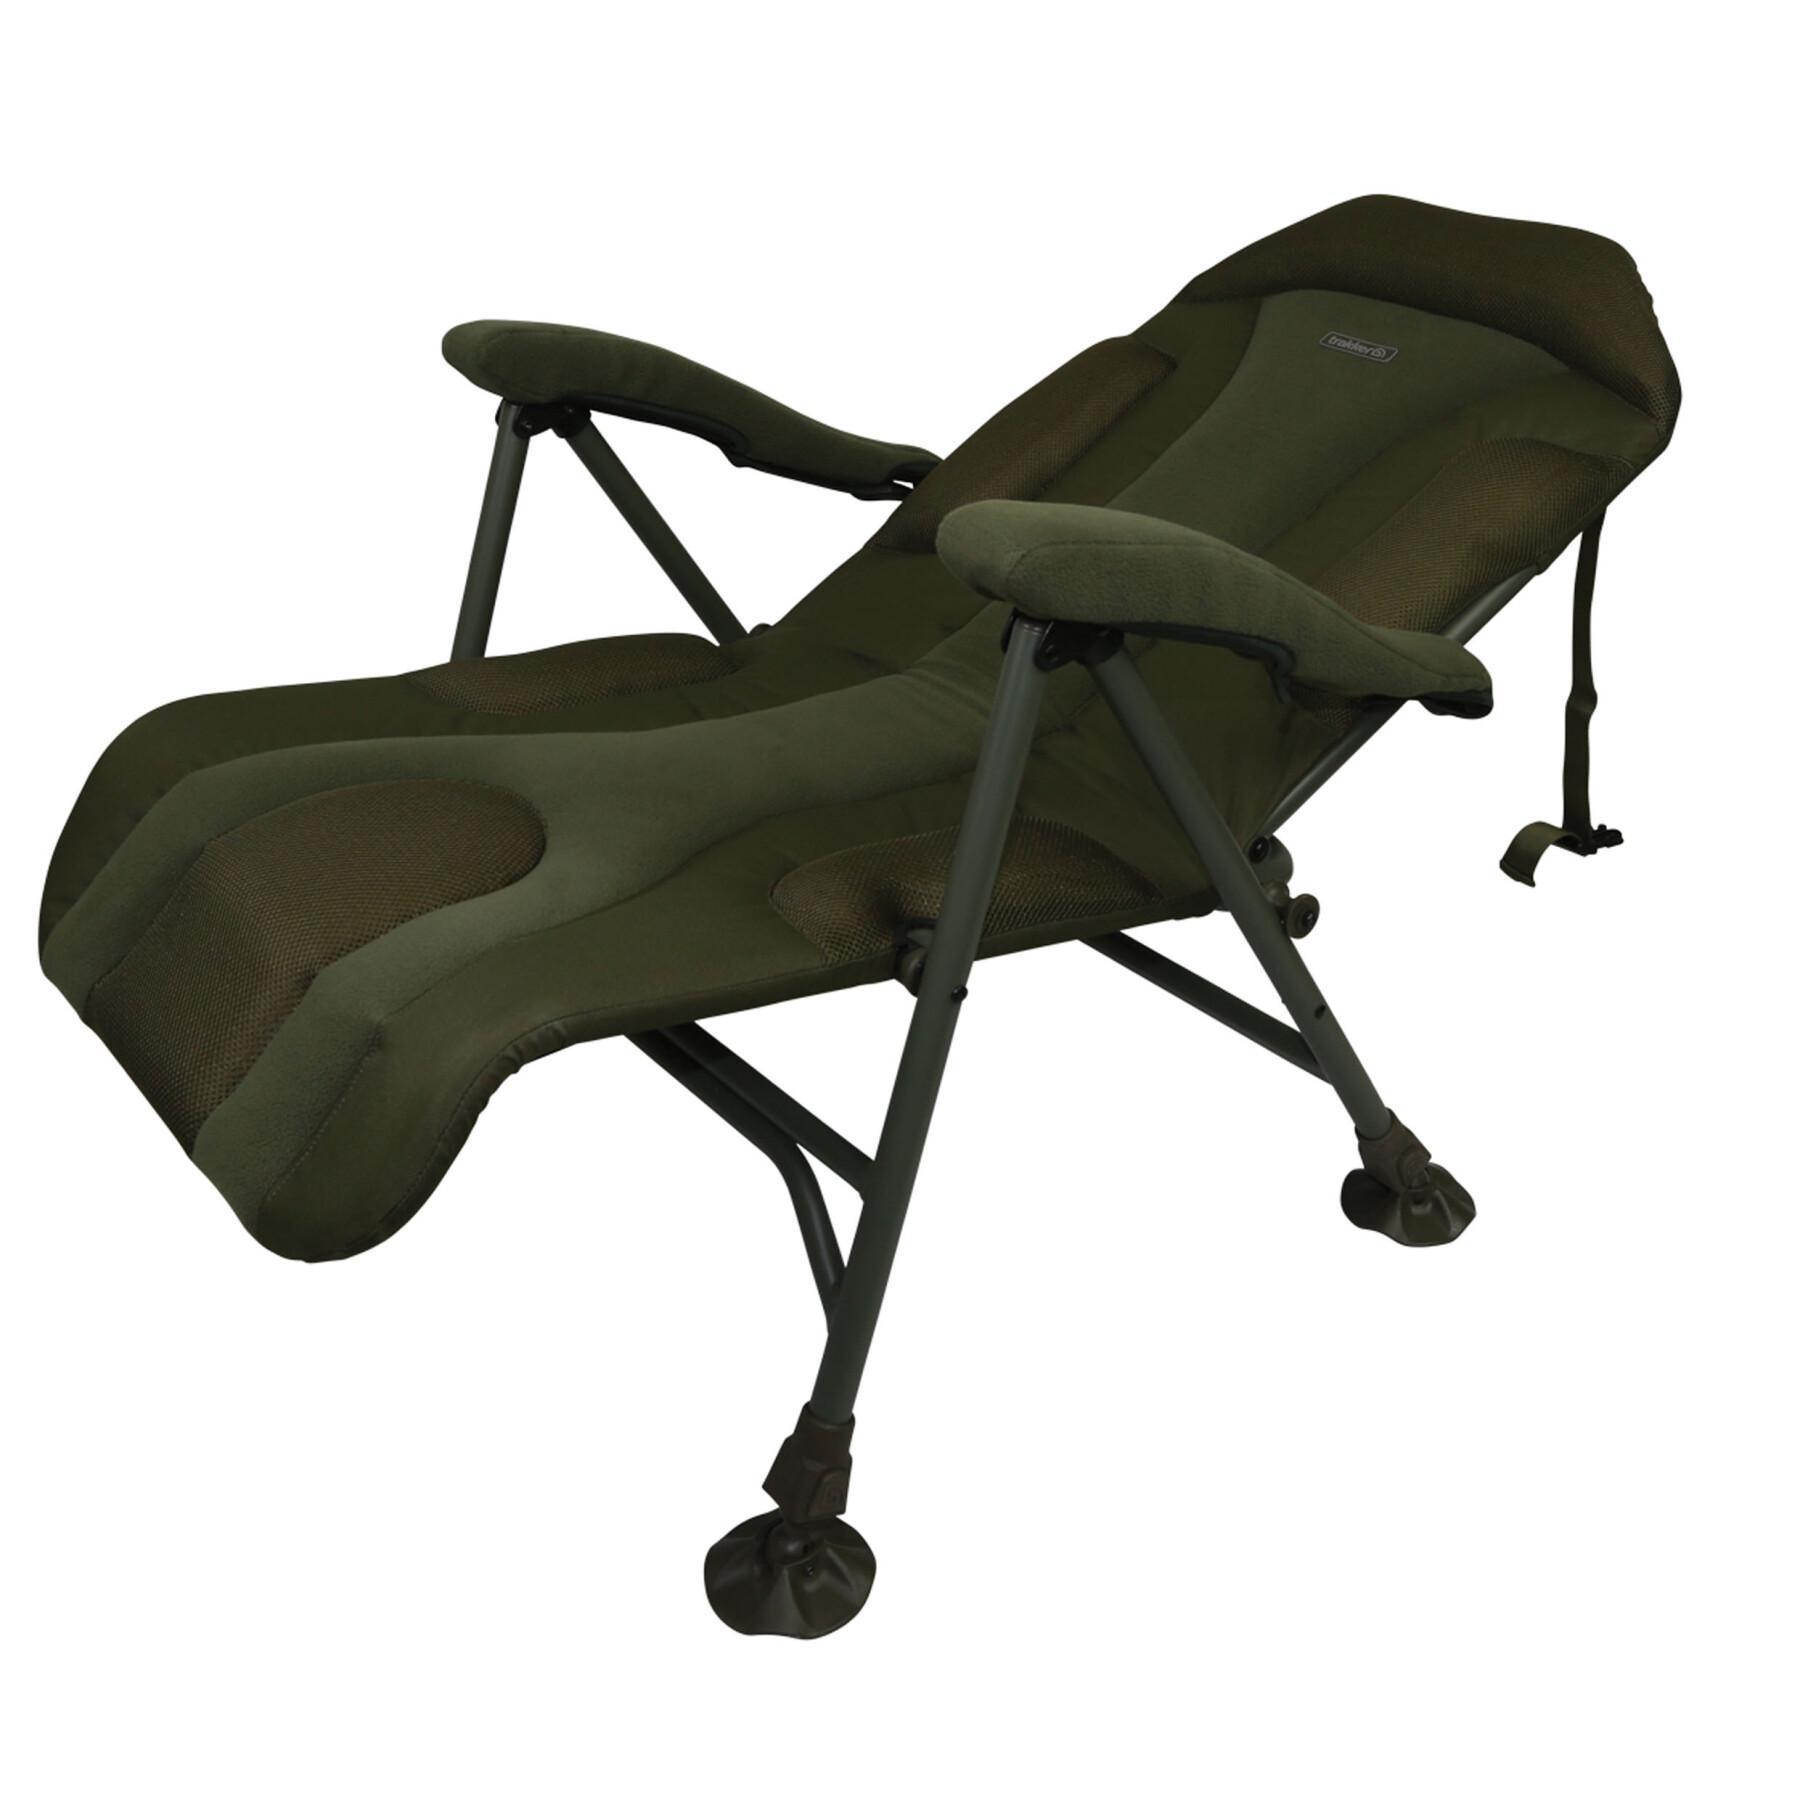 Nivå stol Trakker levelite long-back recliner